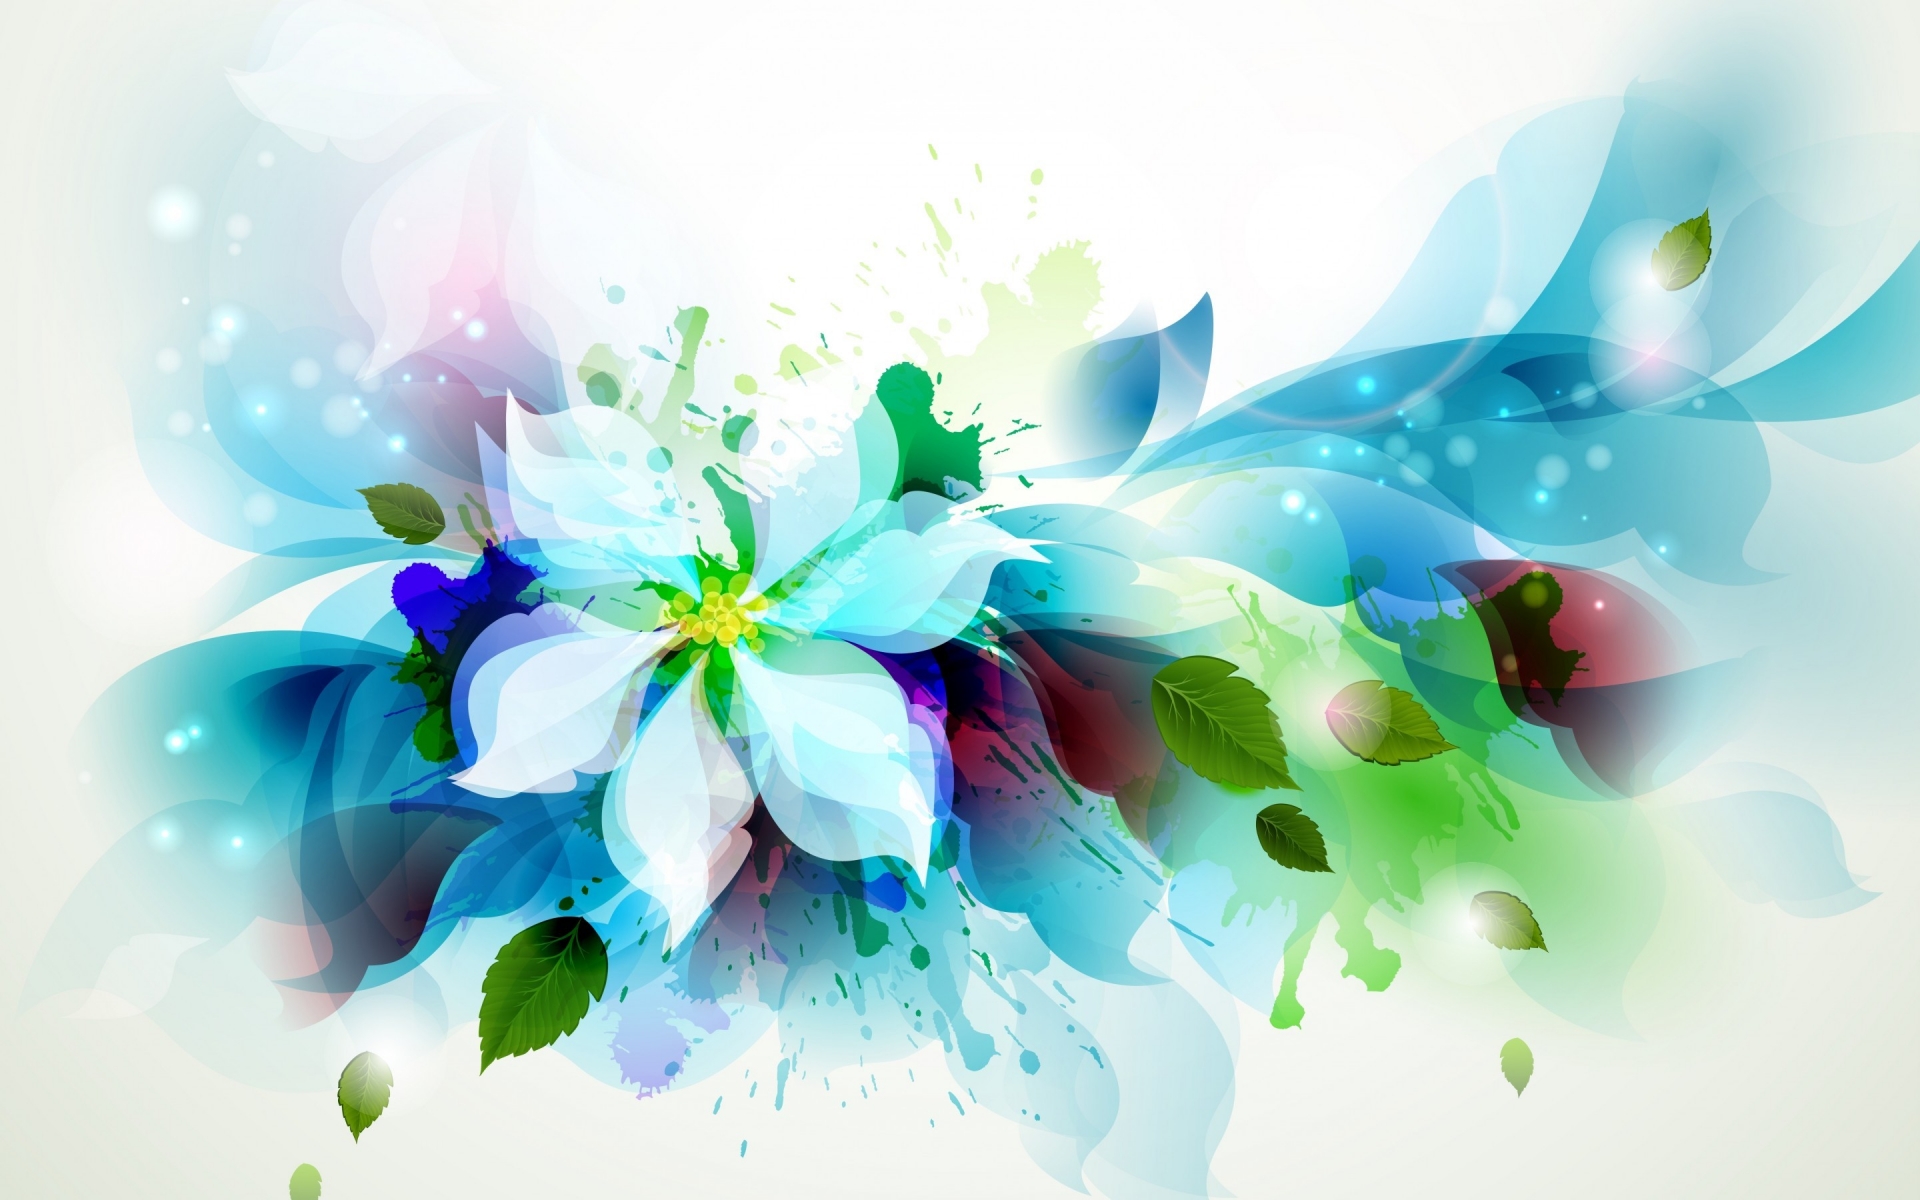 Beautiful Flower Art for 1920 x 1200 widescreen resolution